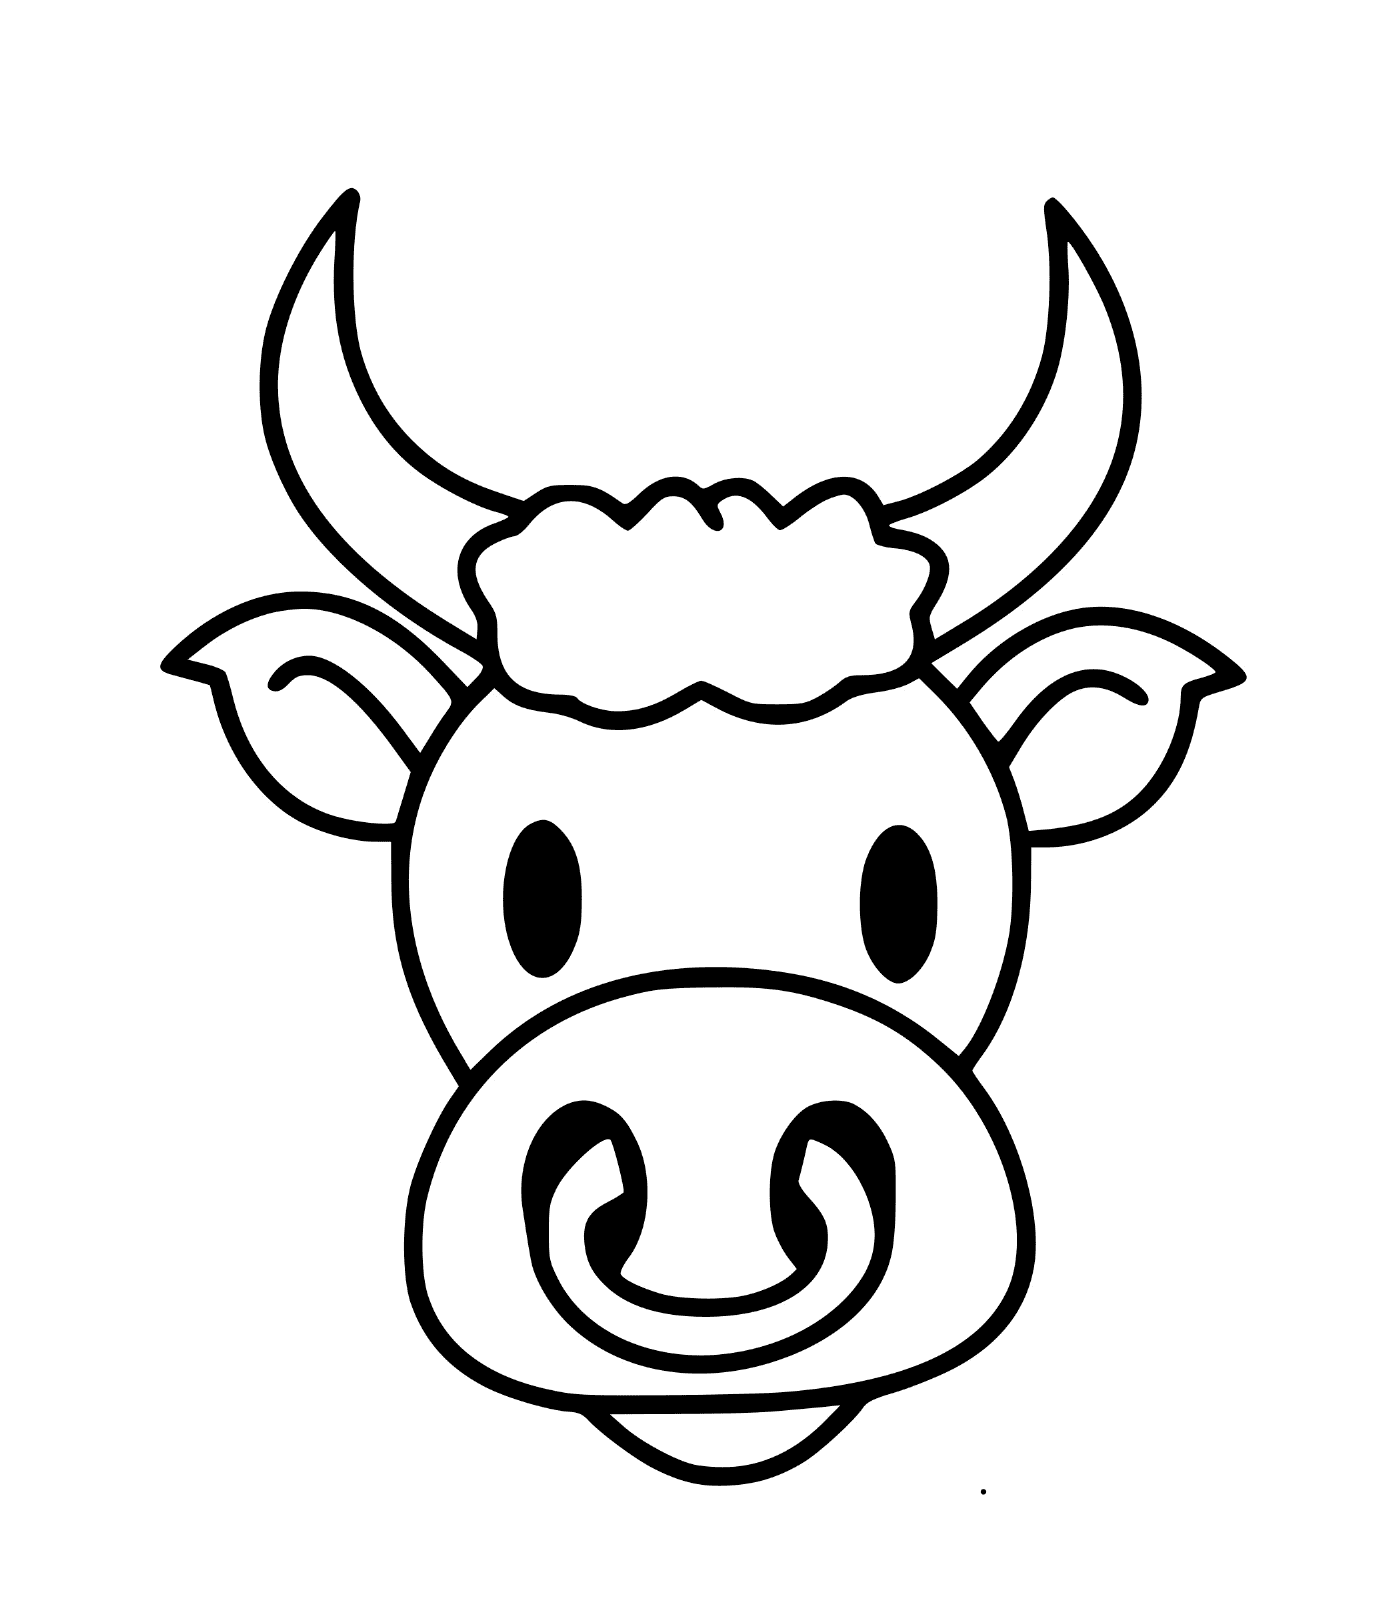  Голова улыбающегося быка 